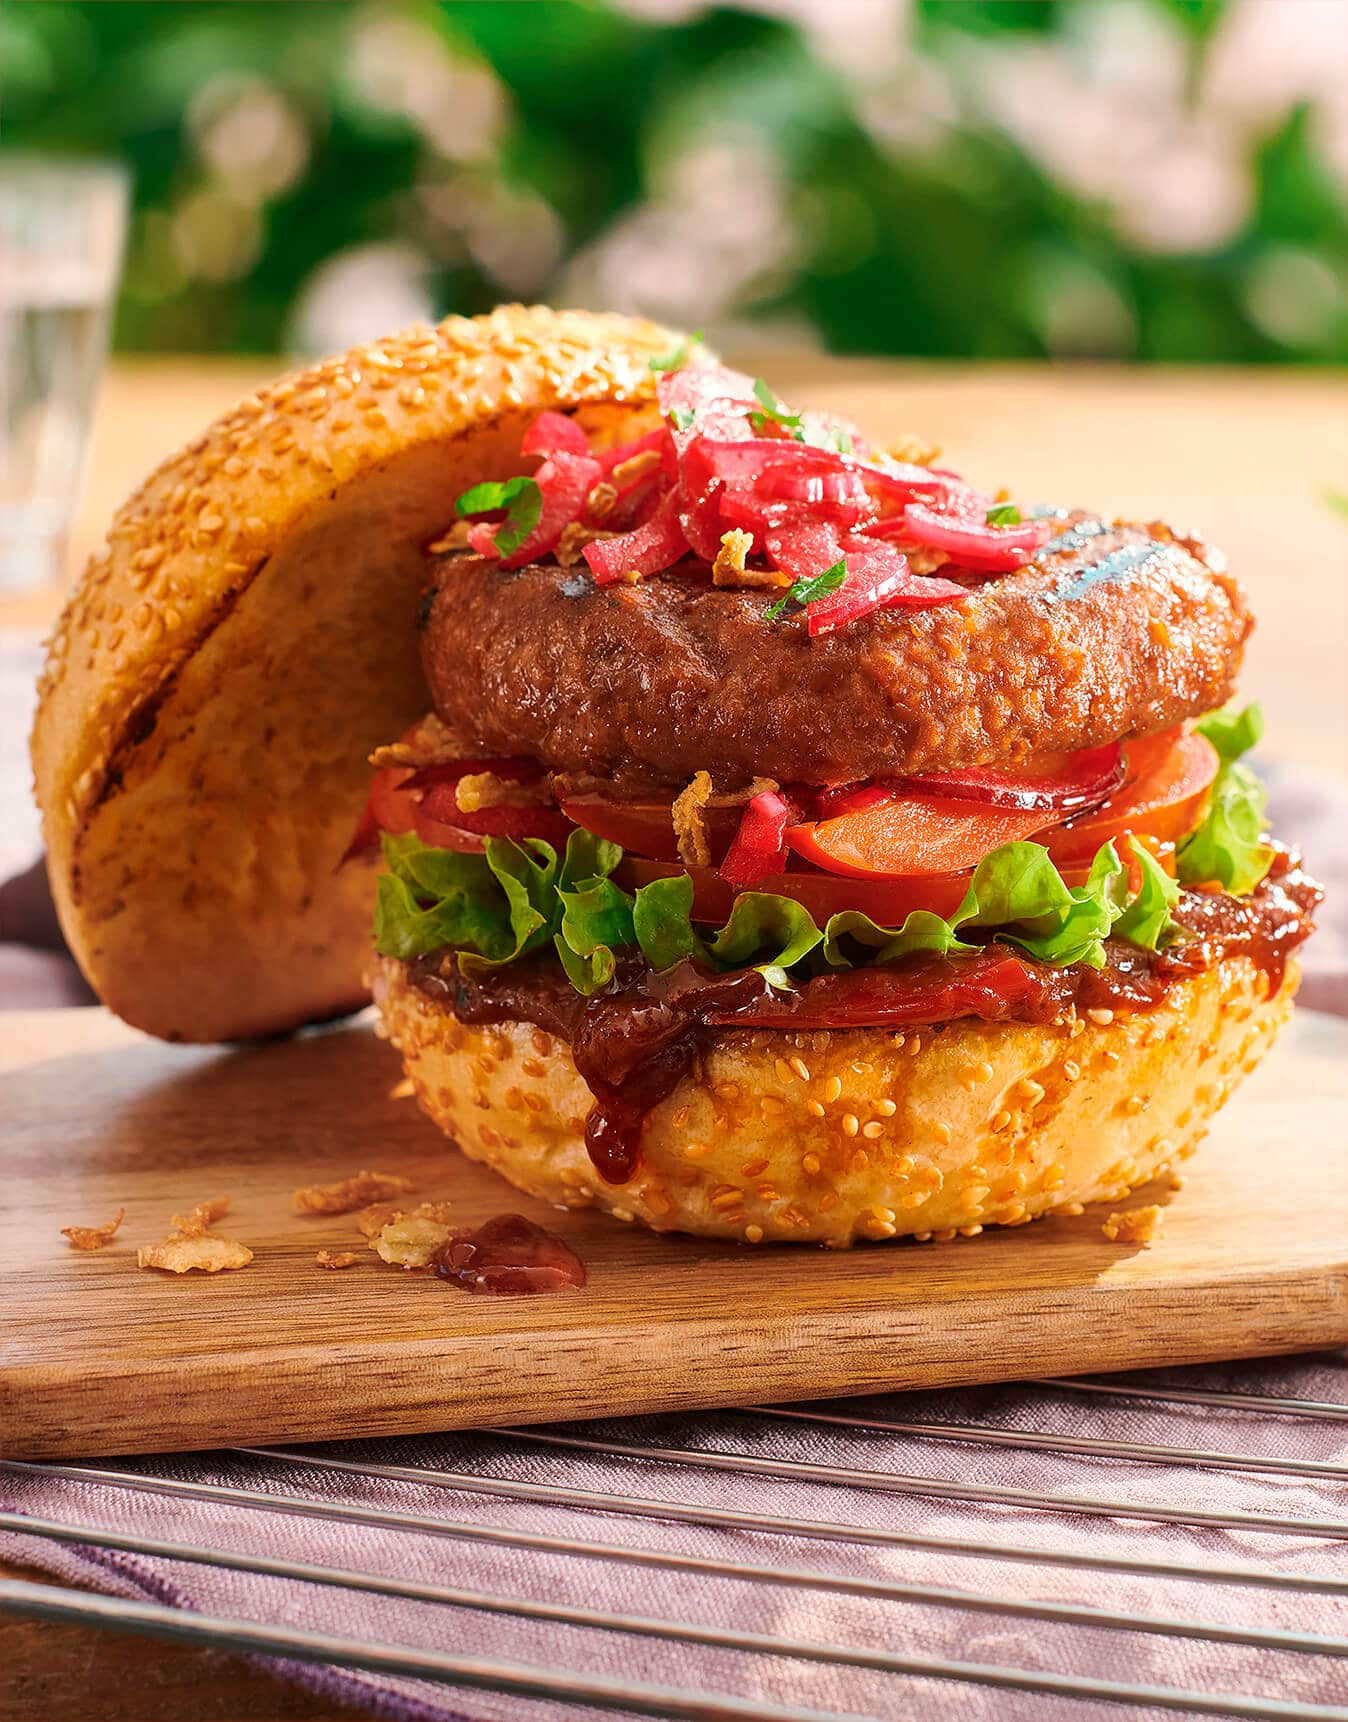 Grillowany burger ze śliwkowym sosem BBQ - produkt roślinny OneDayMore